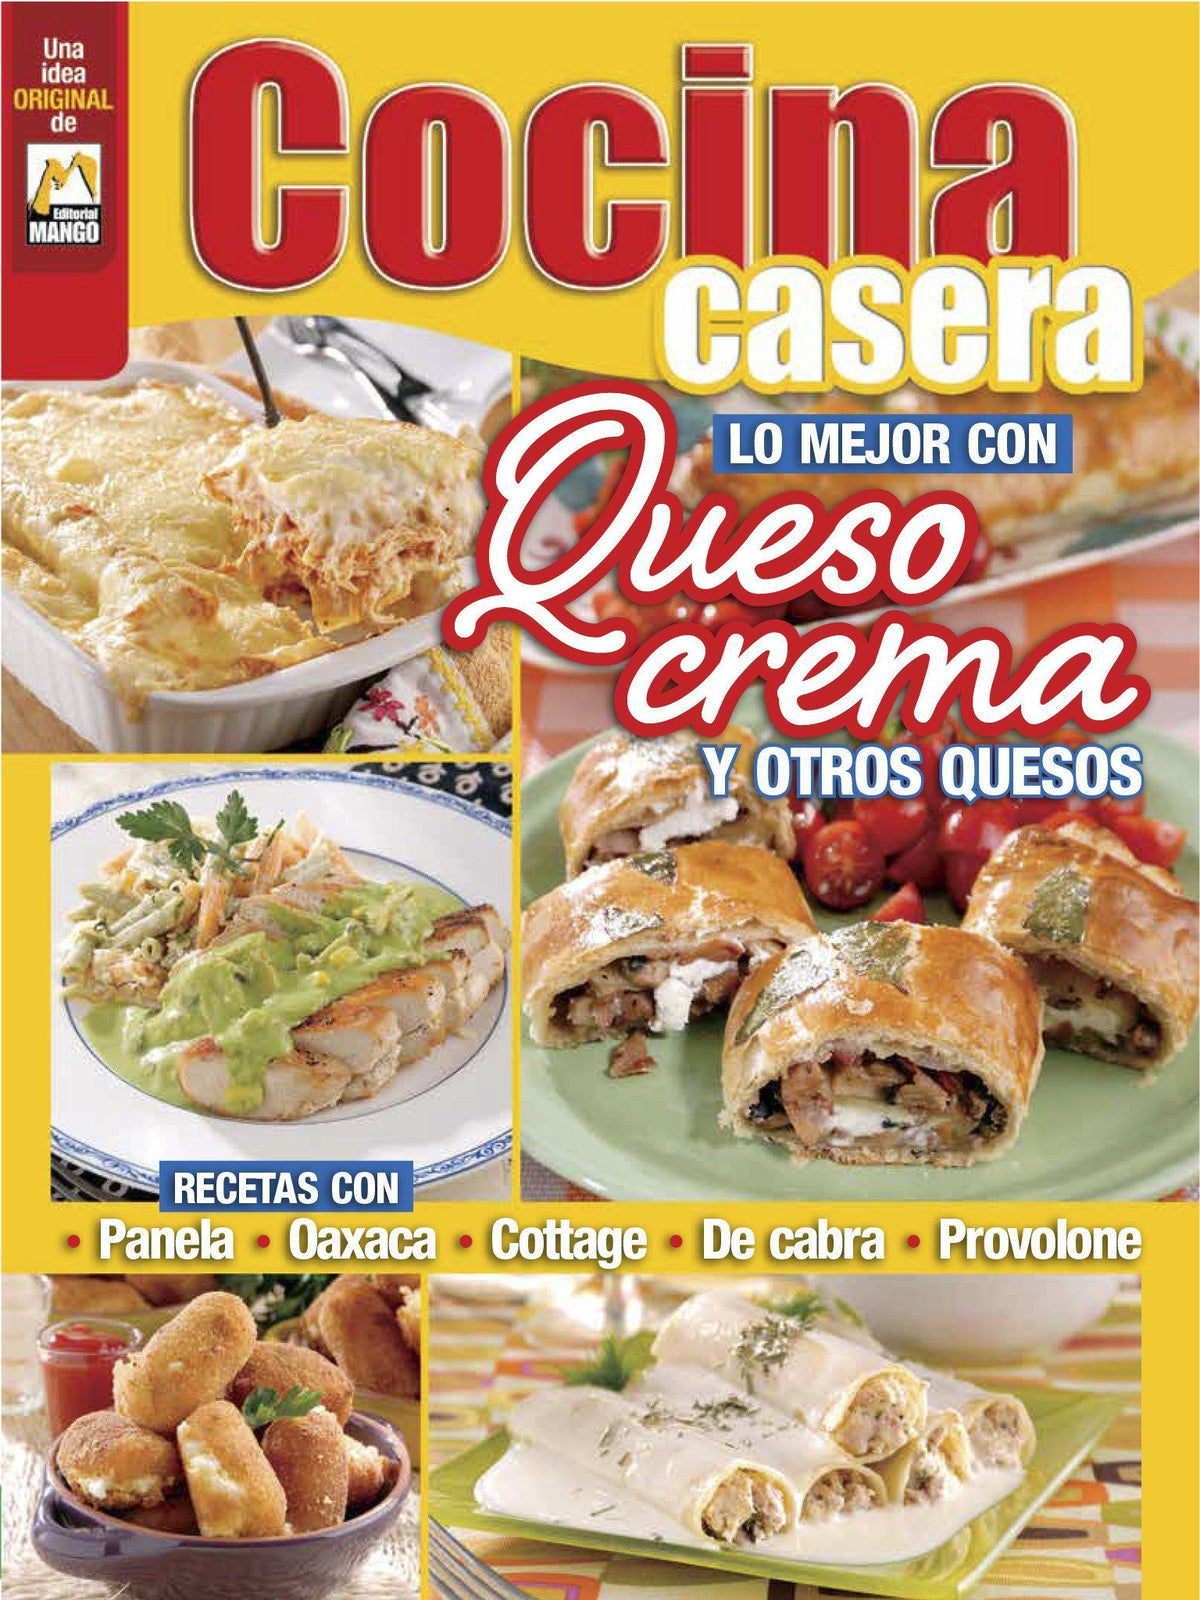 Cocina Casera 91 - Lo mejor con queso crema y otros quesos - Formato Digital - ToukanMango